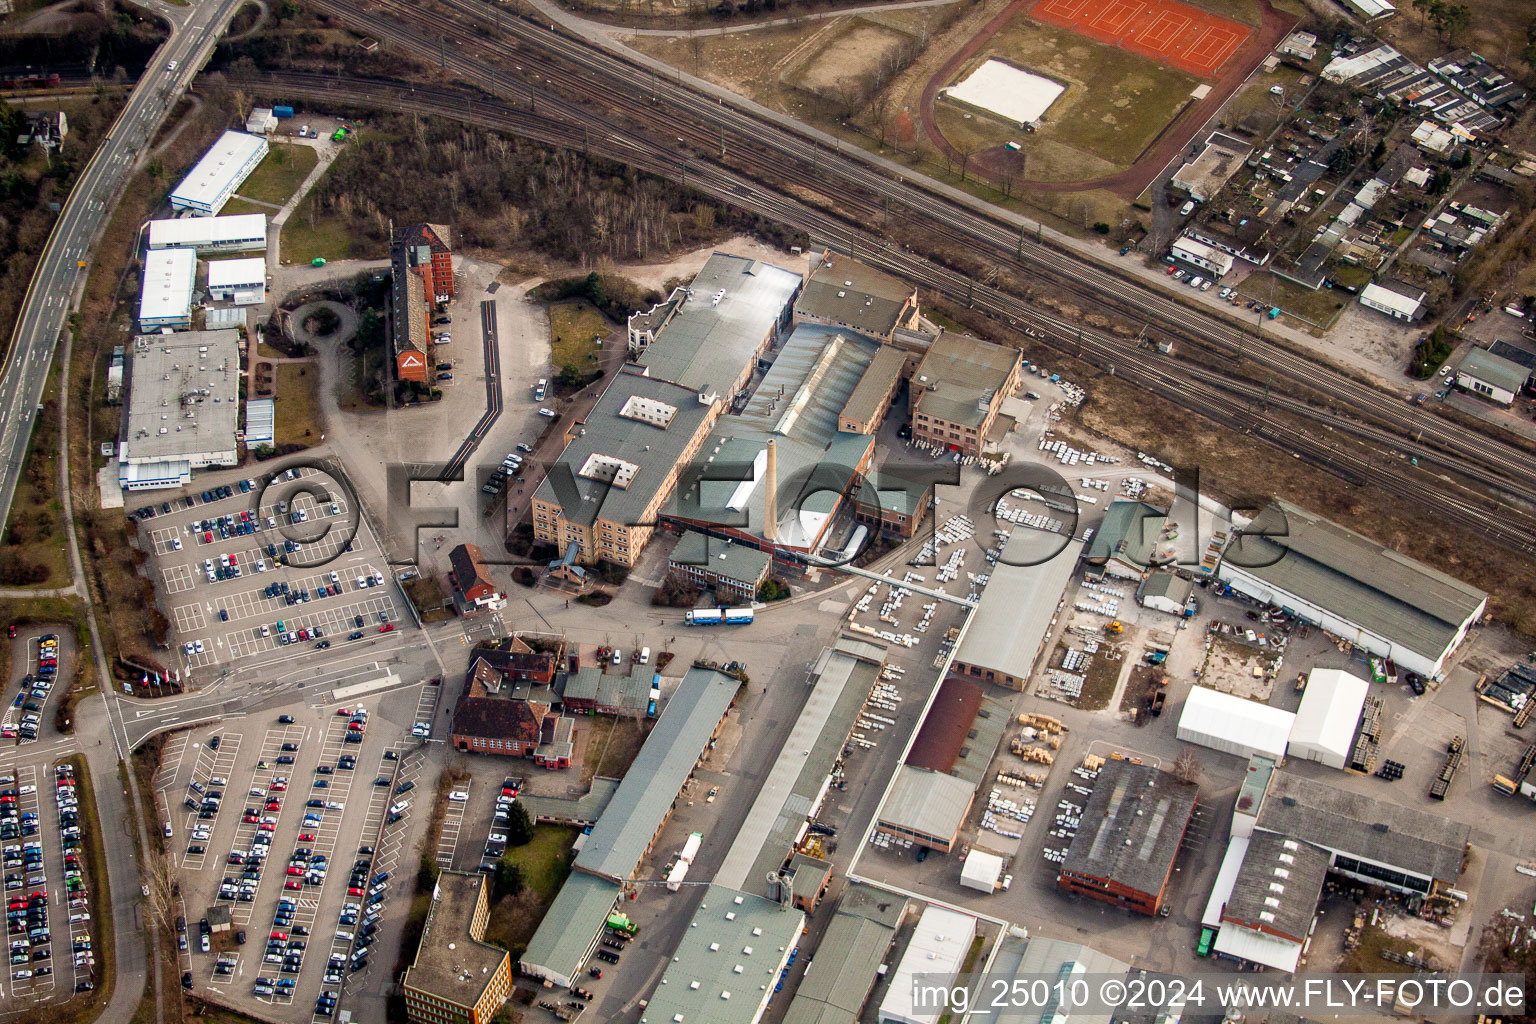 Vue aérienne de Zone industrielle et commerciale de FRIATEC Aktiengesellschaft à le quartier Friedrichsfeld in Mannheim dans le département Bade-Wurtemberg, Allemagne